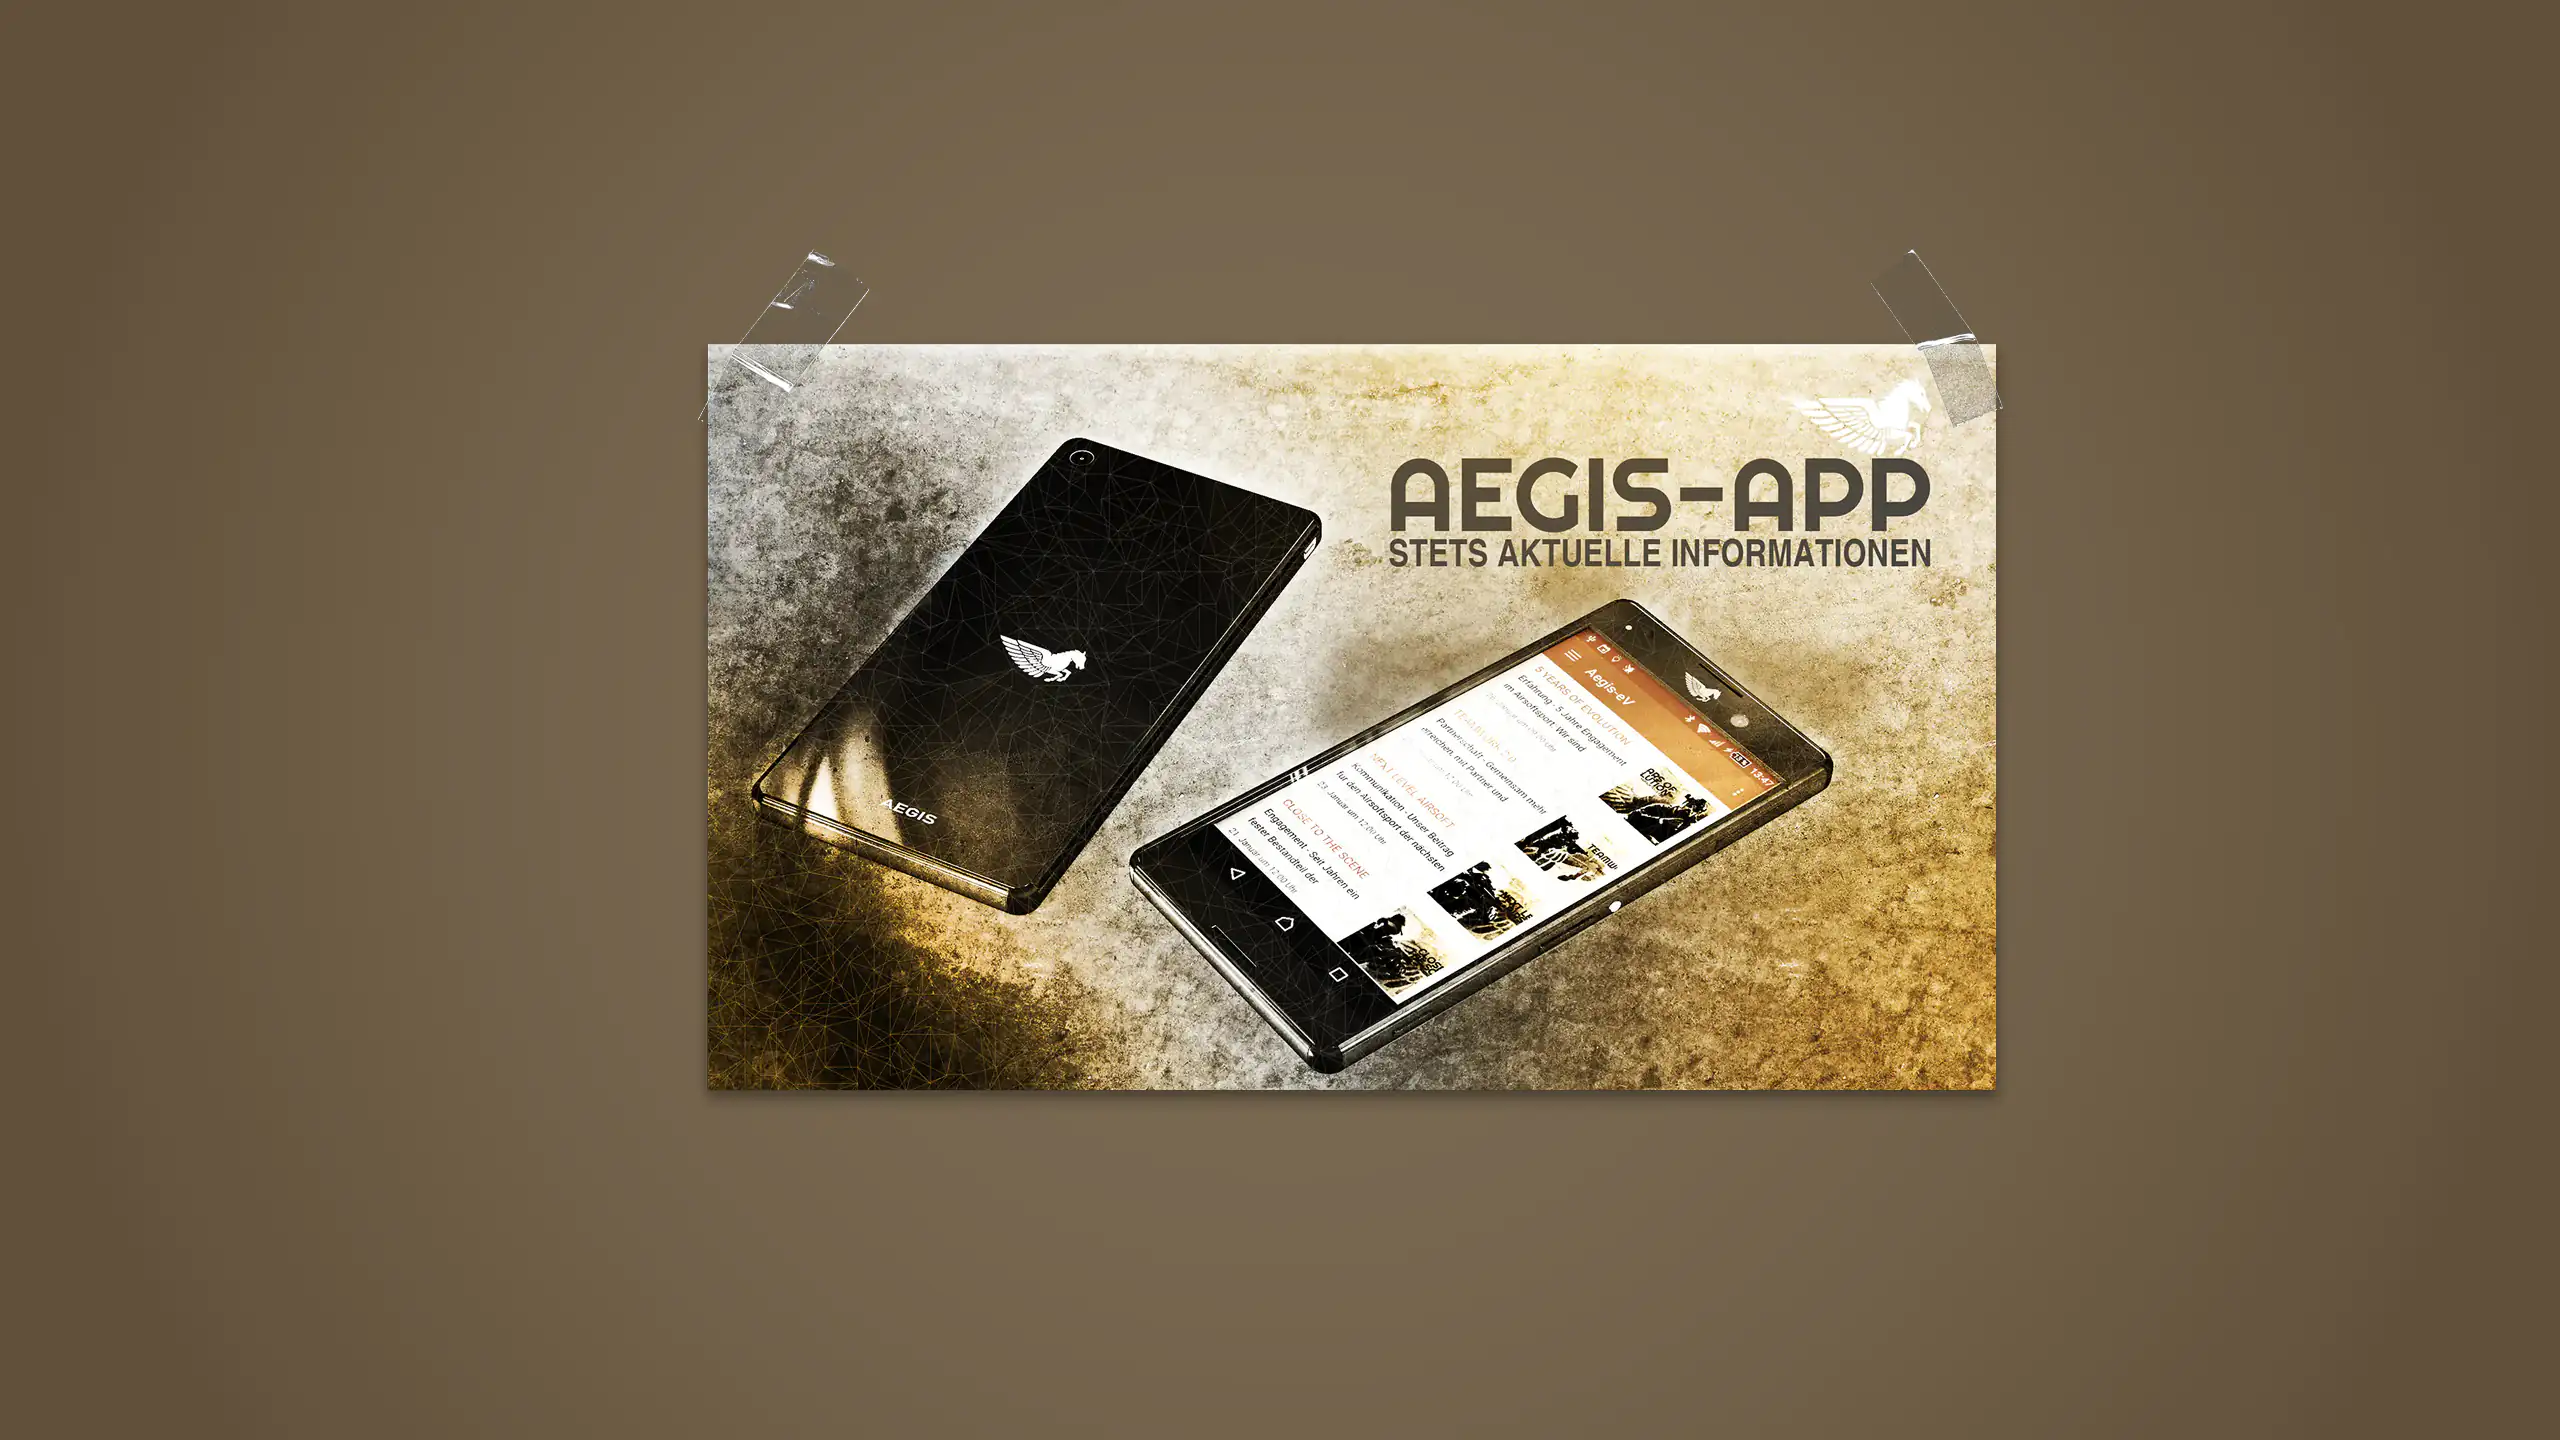 Postermotiv zum Thema Aegis-App mit 3d-Rendering von 2 Smartphones, auf dem das Aegis-Logo bzw. die App zu sehen ist. Das Ganze ist auf graubraunem Hintergrund.